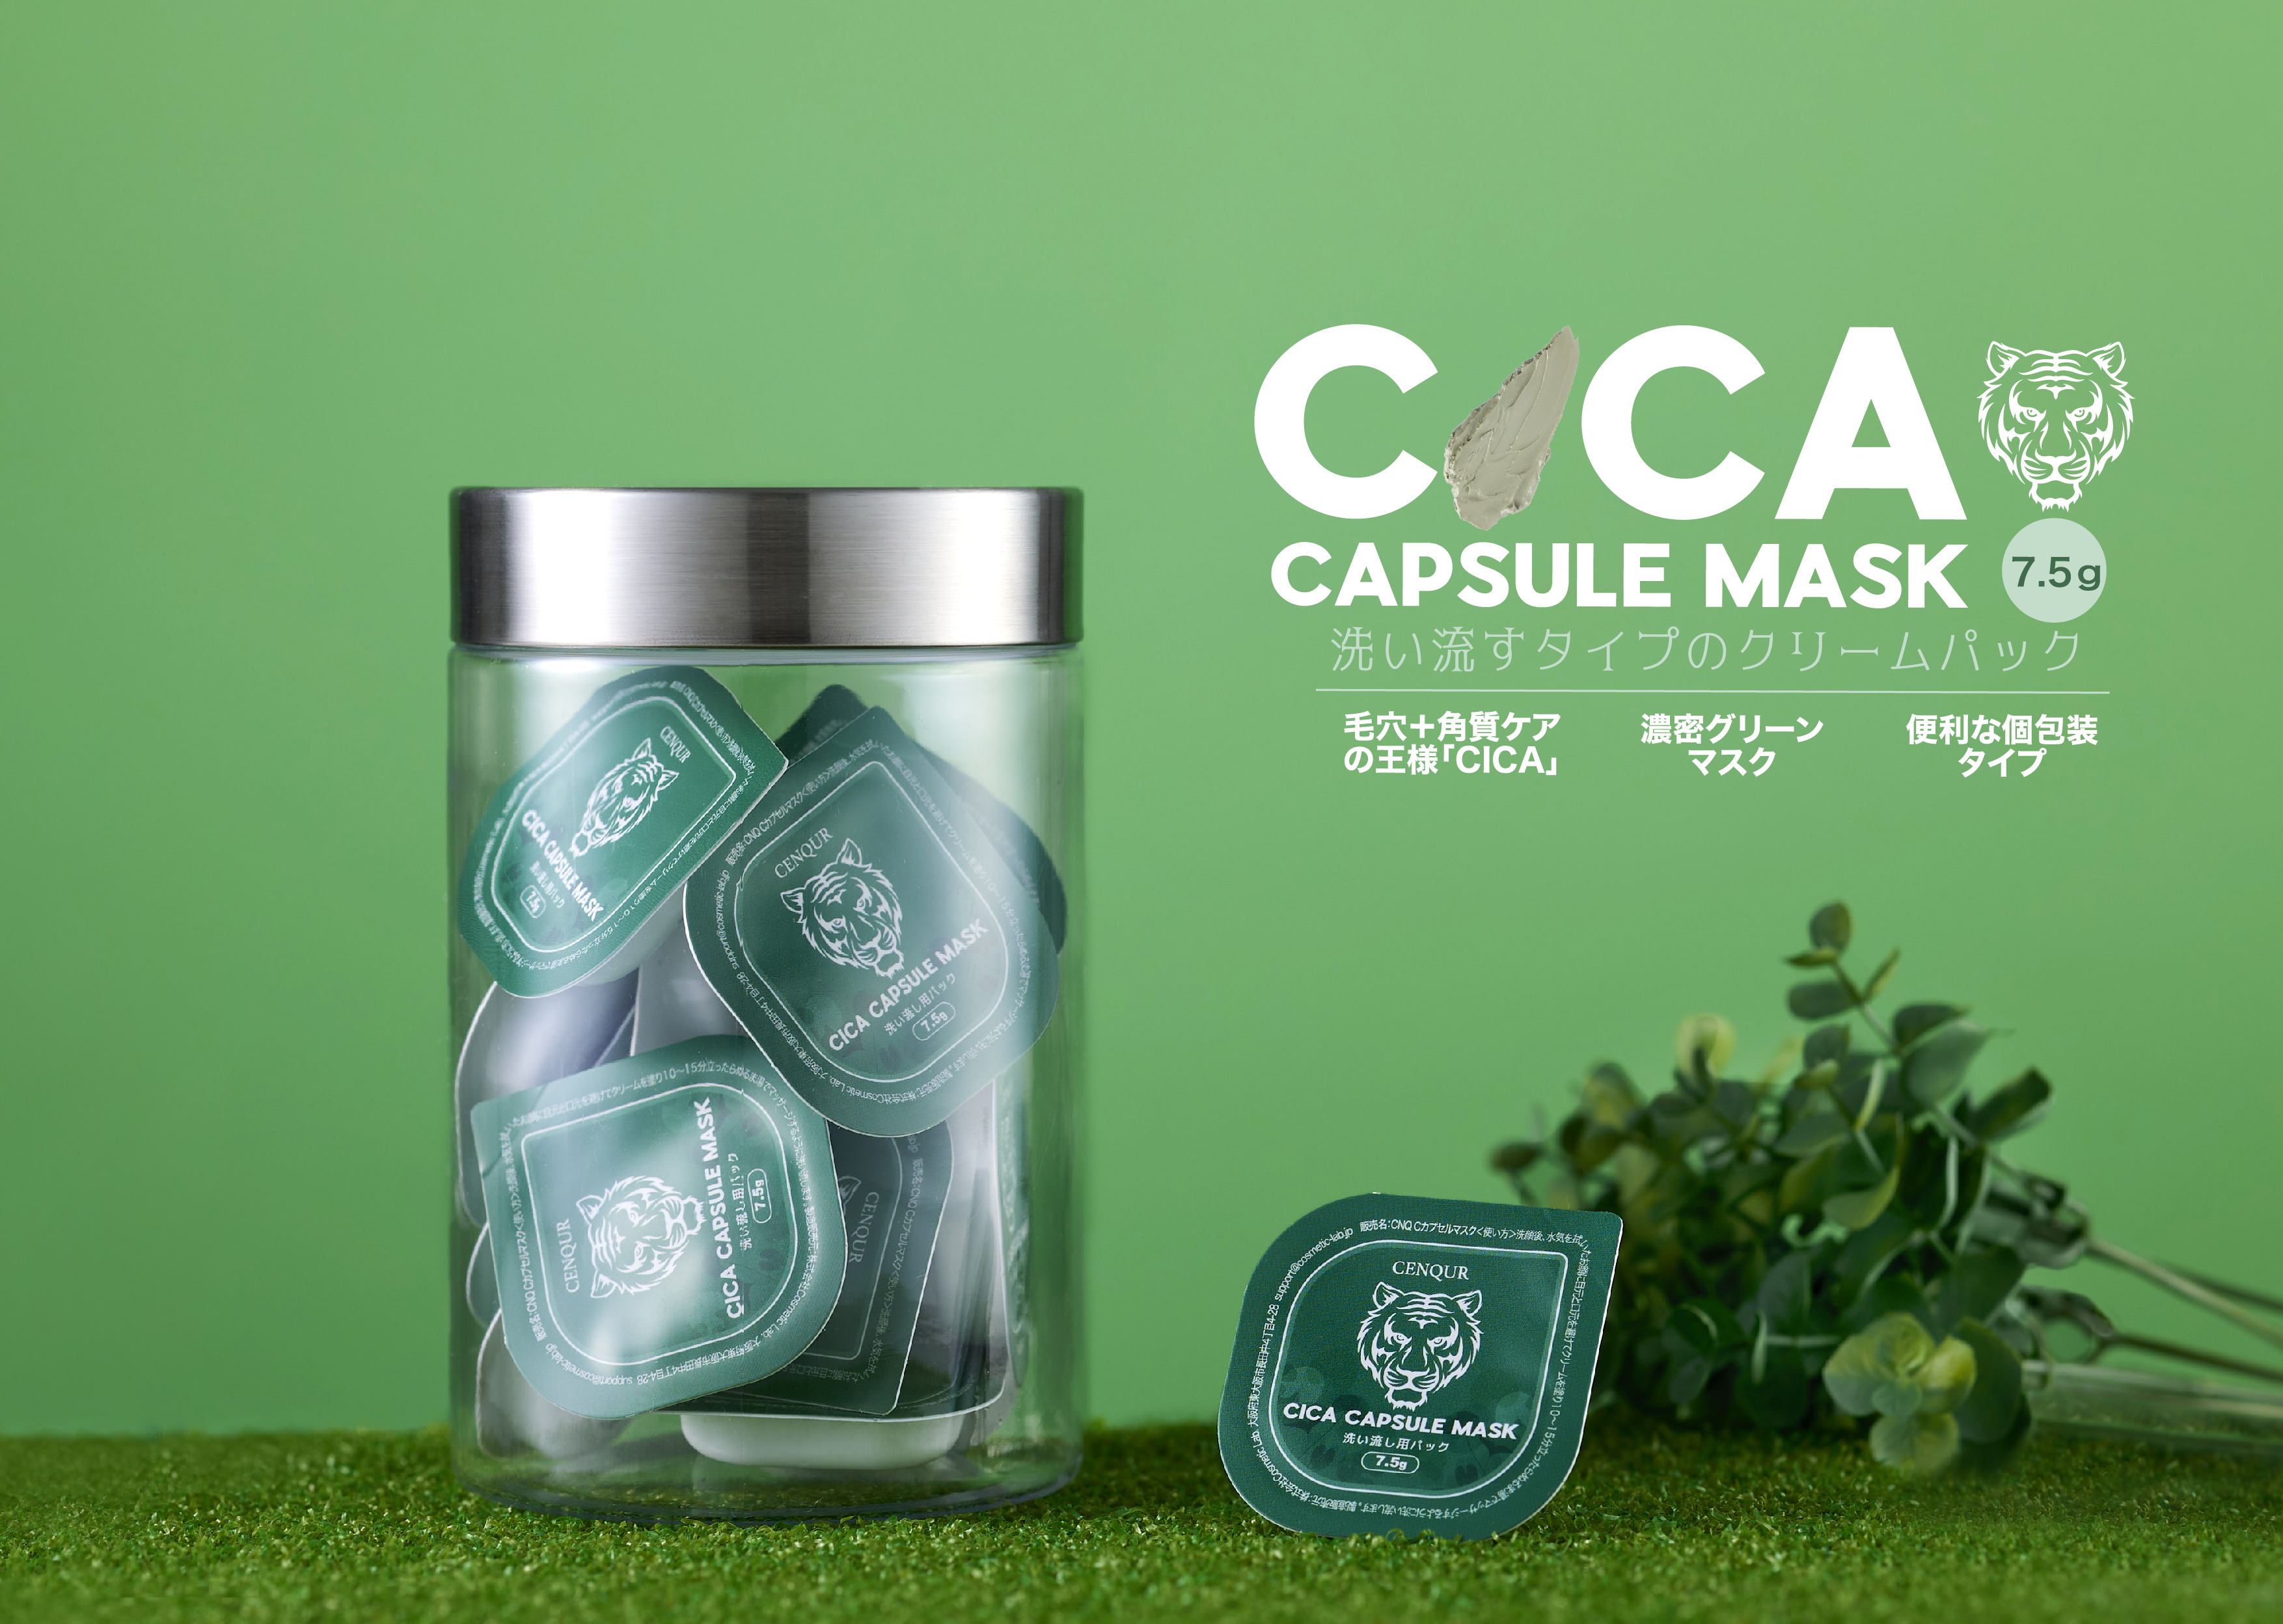 ９月1日《CENQUR新商品》CICA※配合 ”洗い流す” タイプのカプセルパック